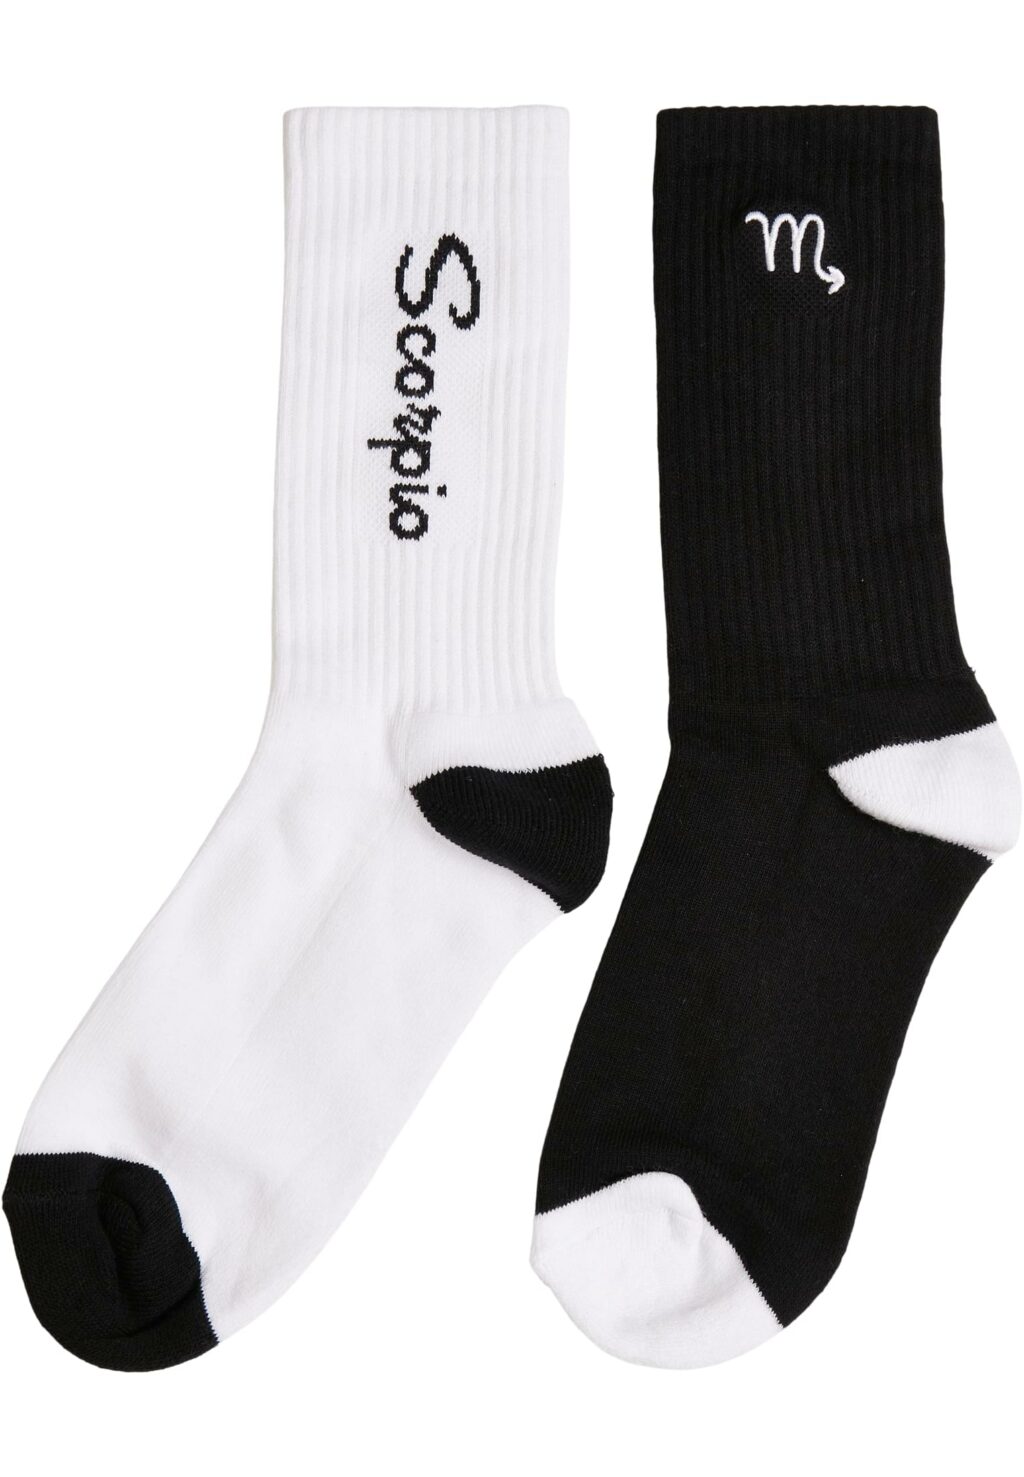 Zodiac Socks 2-Pack black/white scorpio MT2235